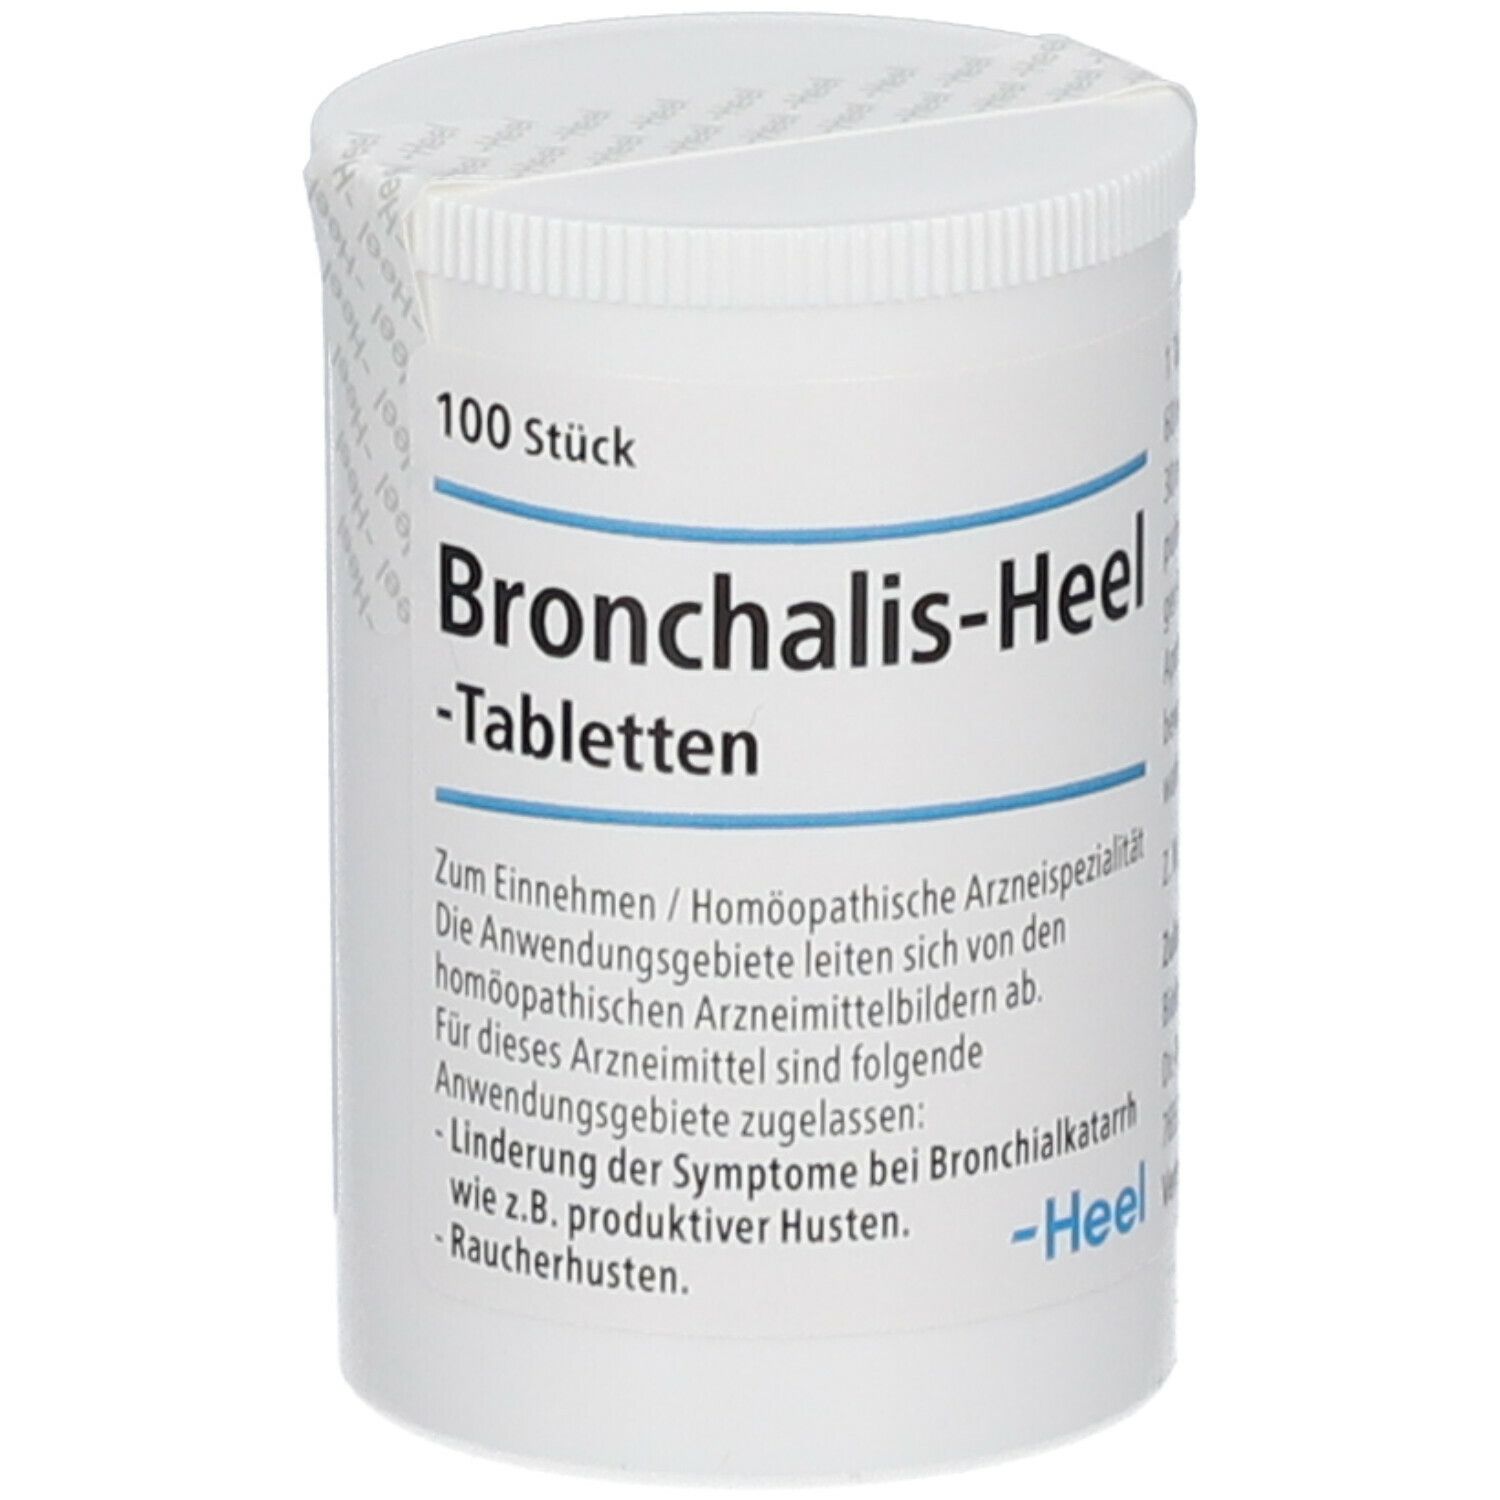 Bronchalis-Heel®-Tabletten